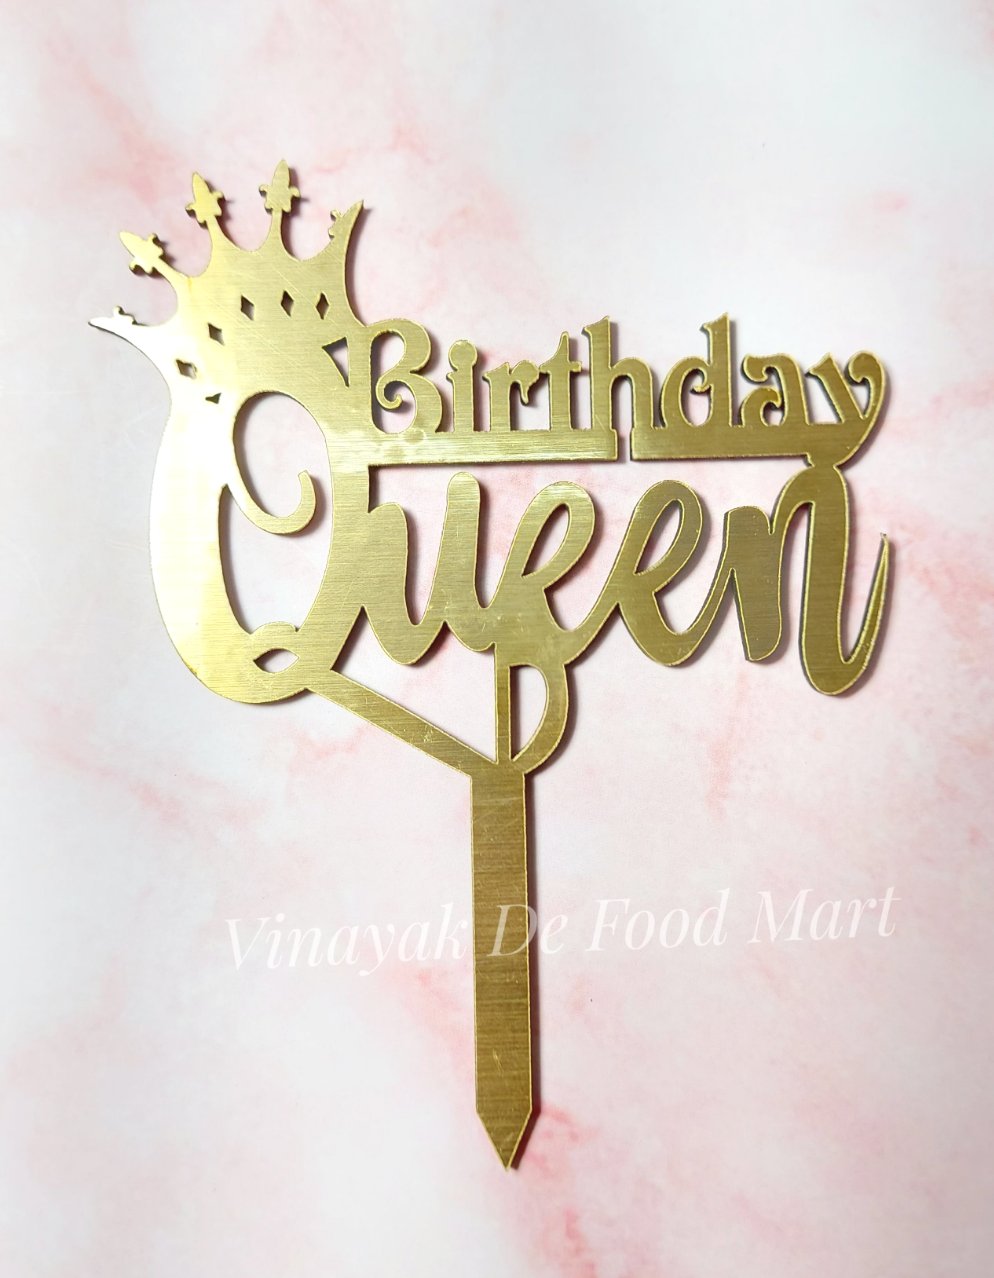 B15 Birthday Queen MDF Cake Topper - Vinayak De Food Mart